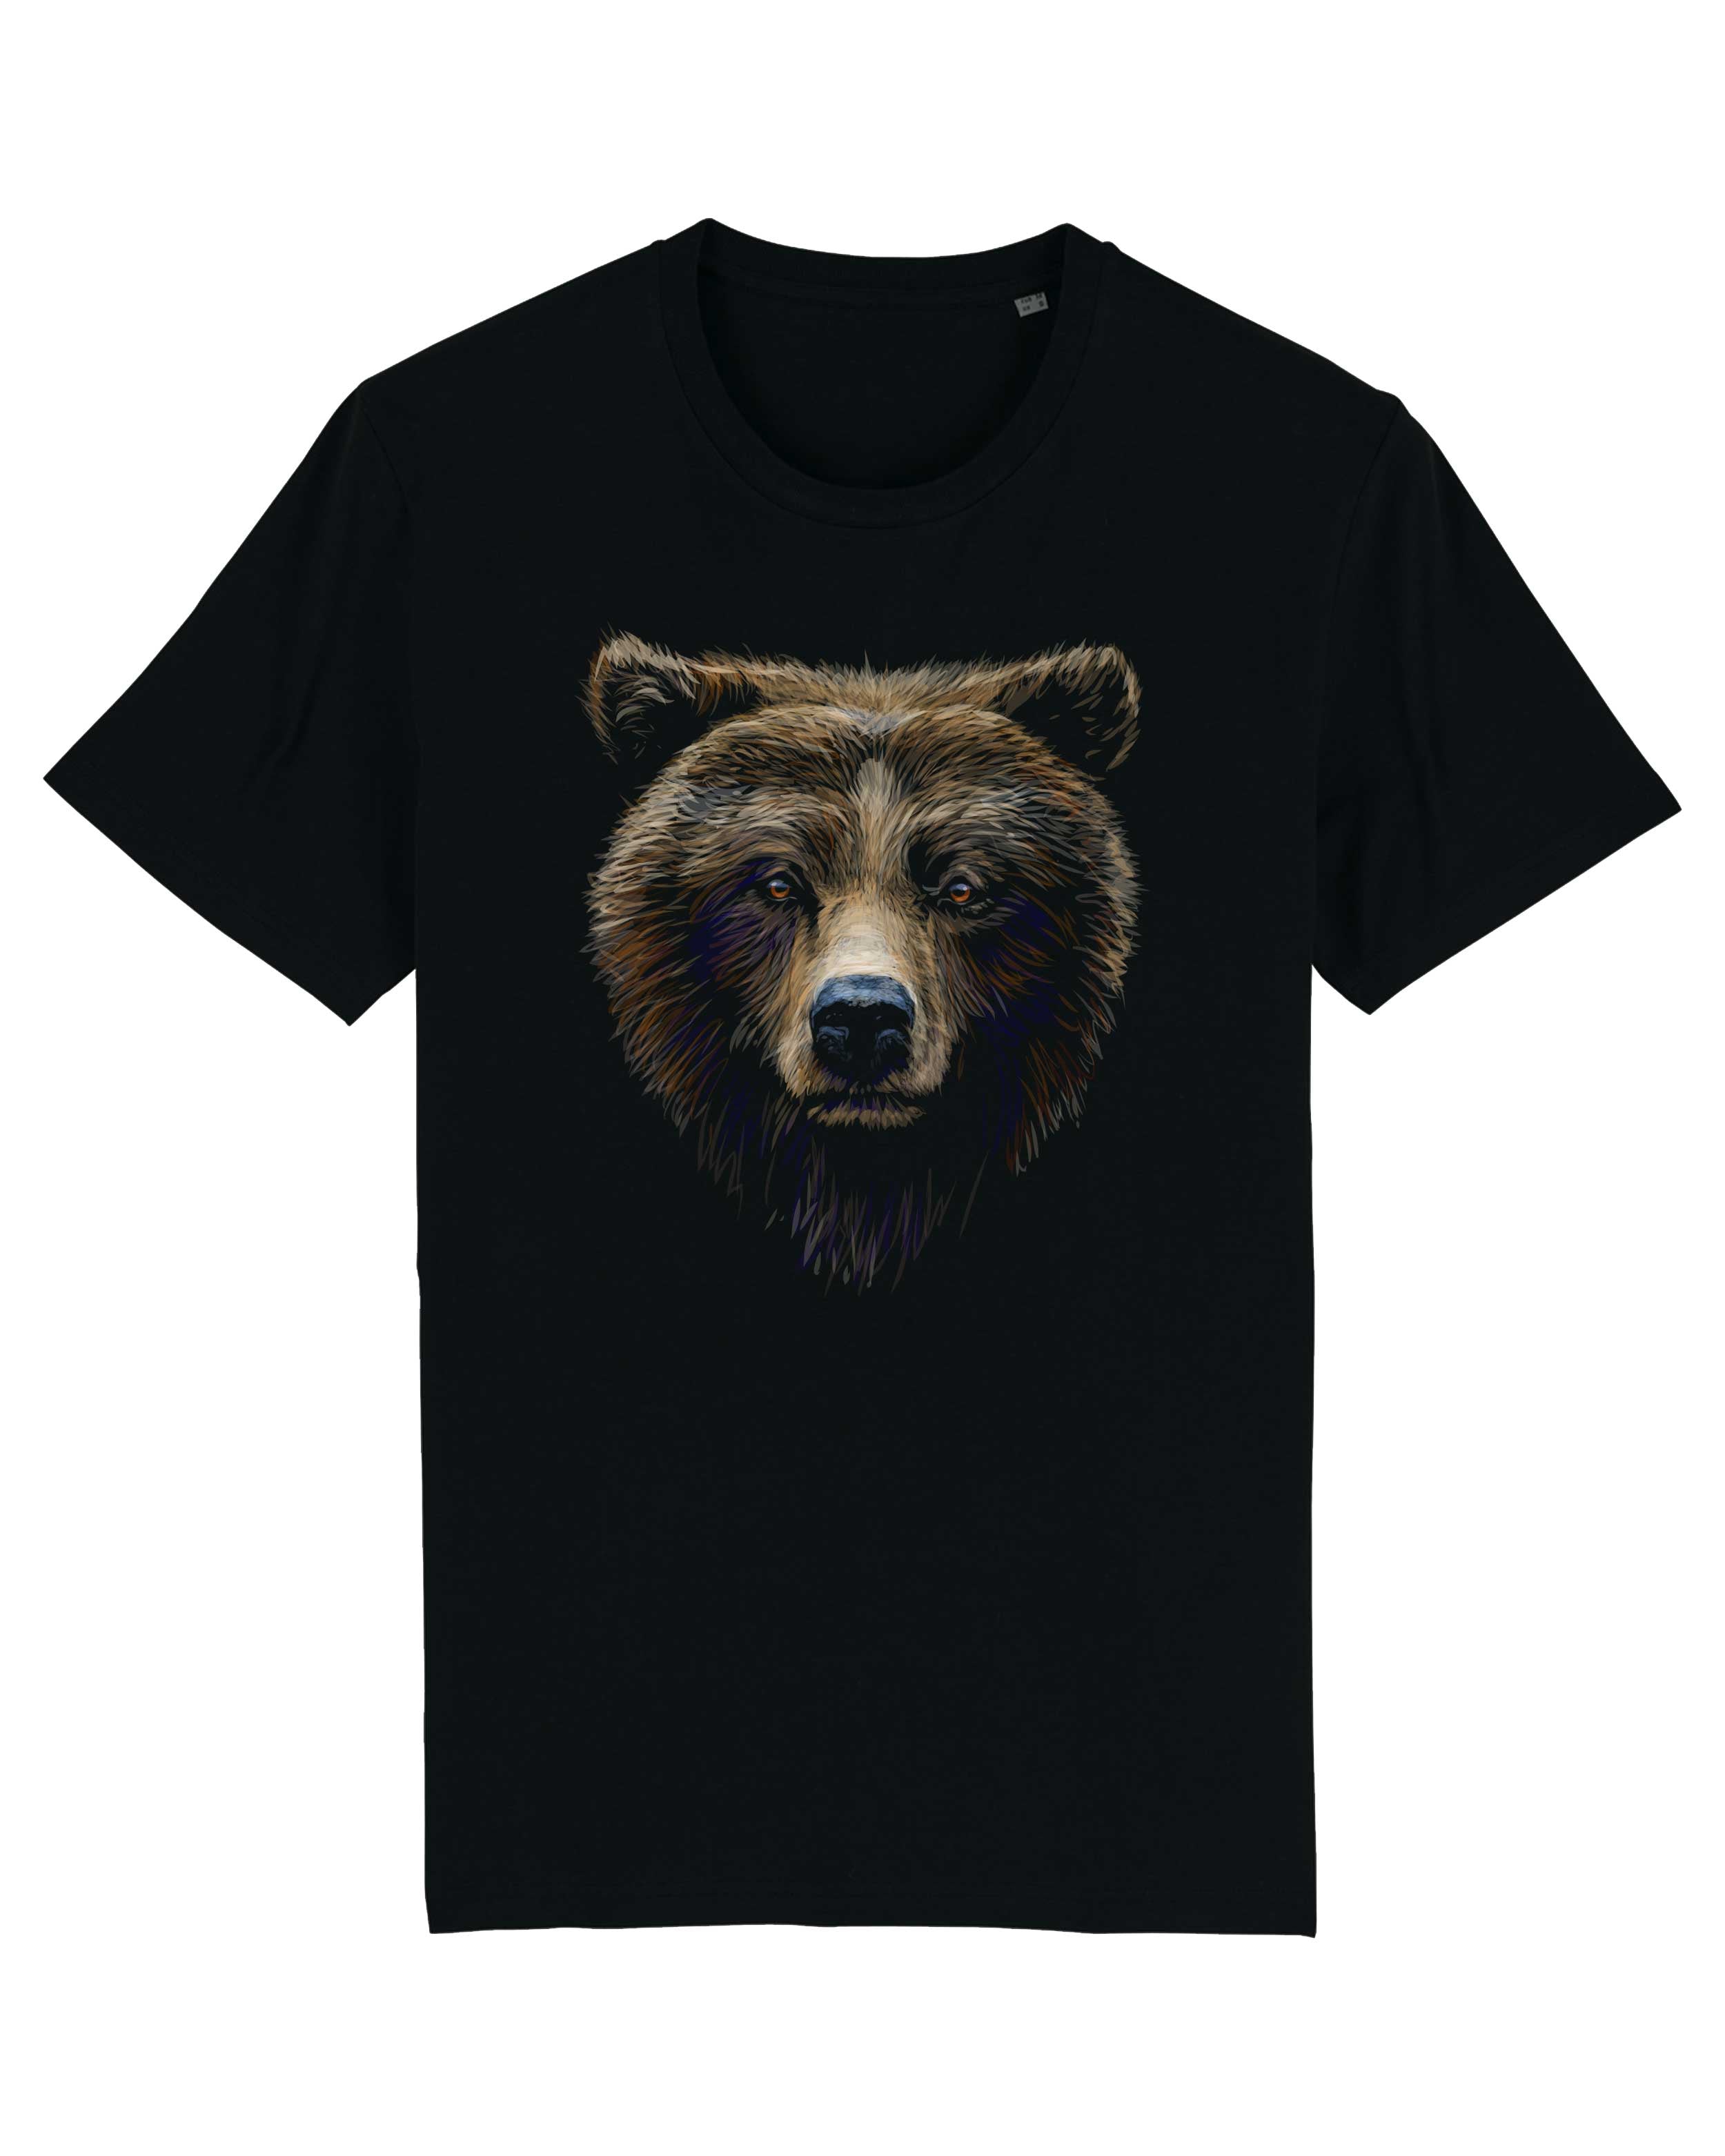 T-Shirt Bär Illustration Tiere, Bio-Baumwolle, Unisex, Damen, Kids